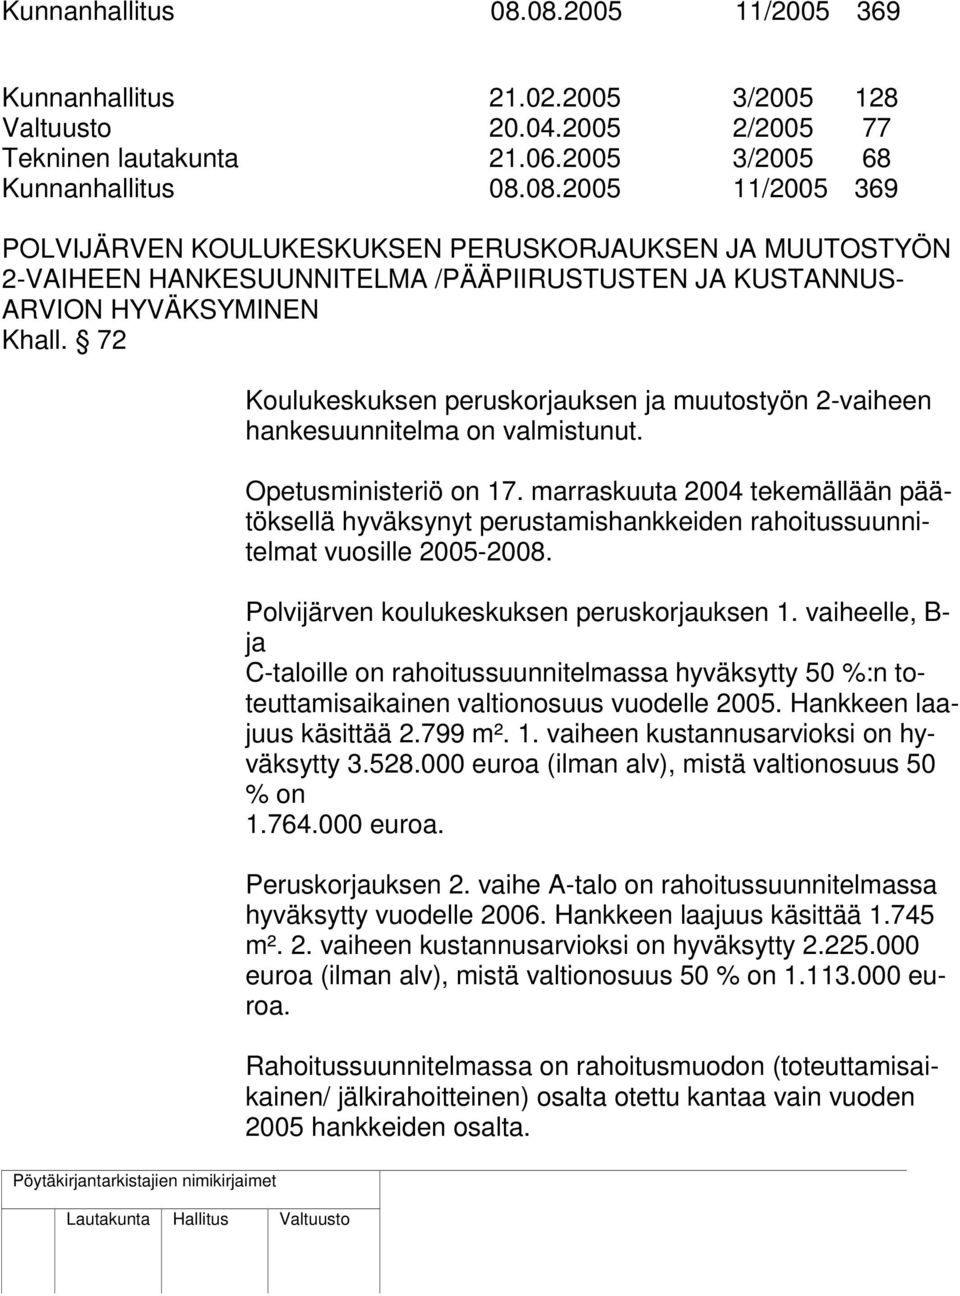 marraskuuta 2004 tekemällään päätöksellä hyväksynyt perustamishankkeiden rahoitussuunnitelmat vuosille 2005-2008. Polvijärven koulukeskuksen peruskorjauksen 1.